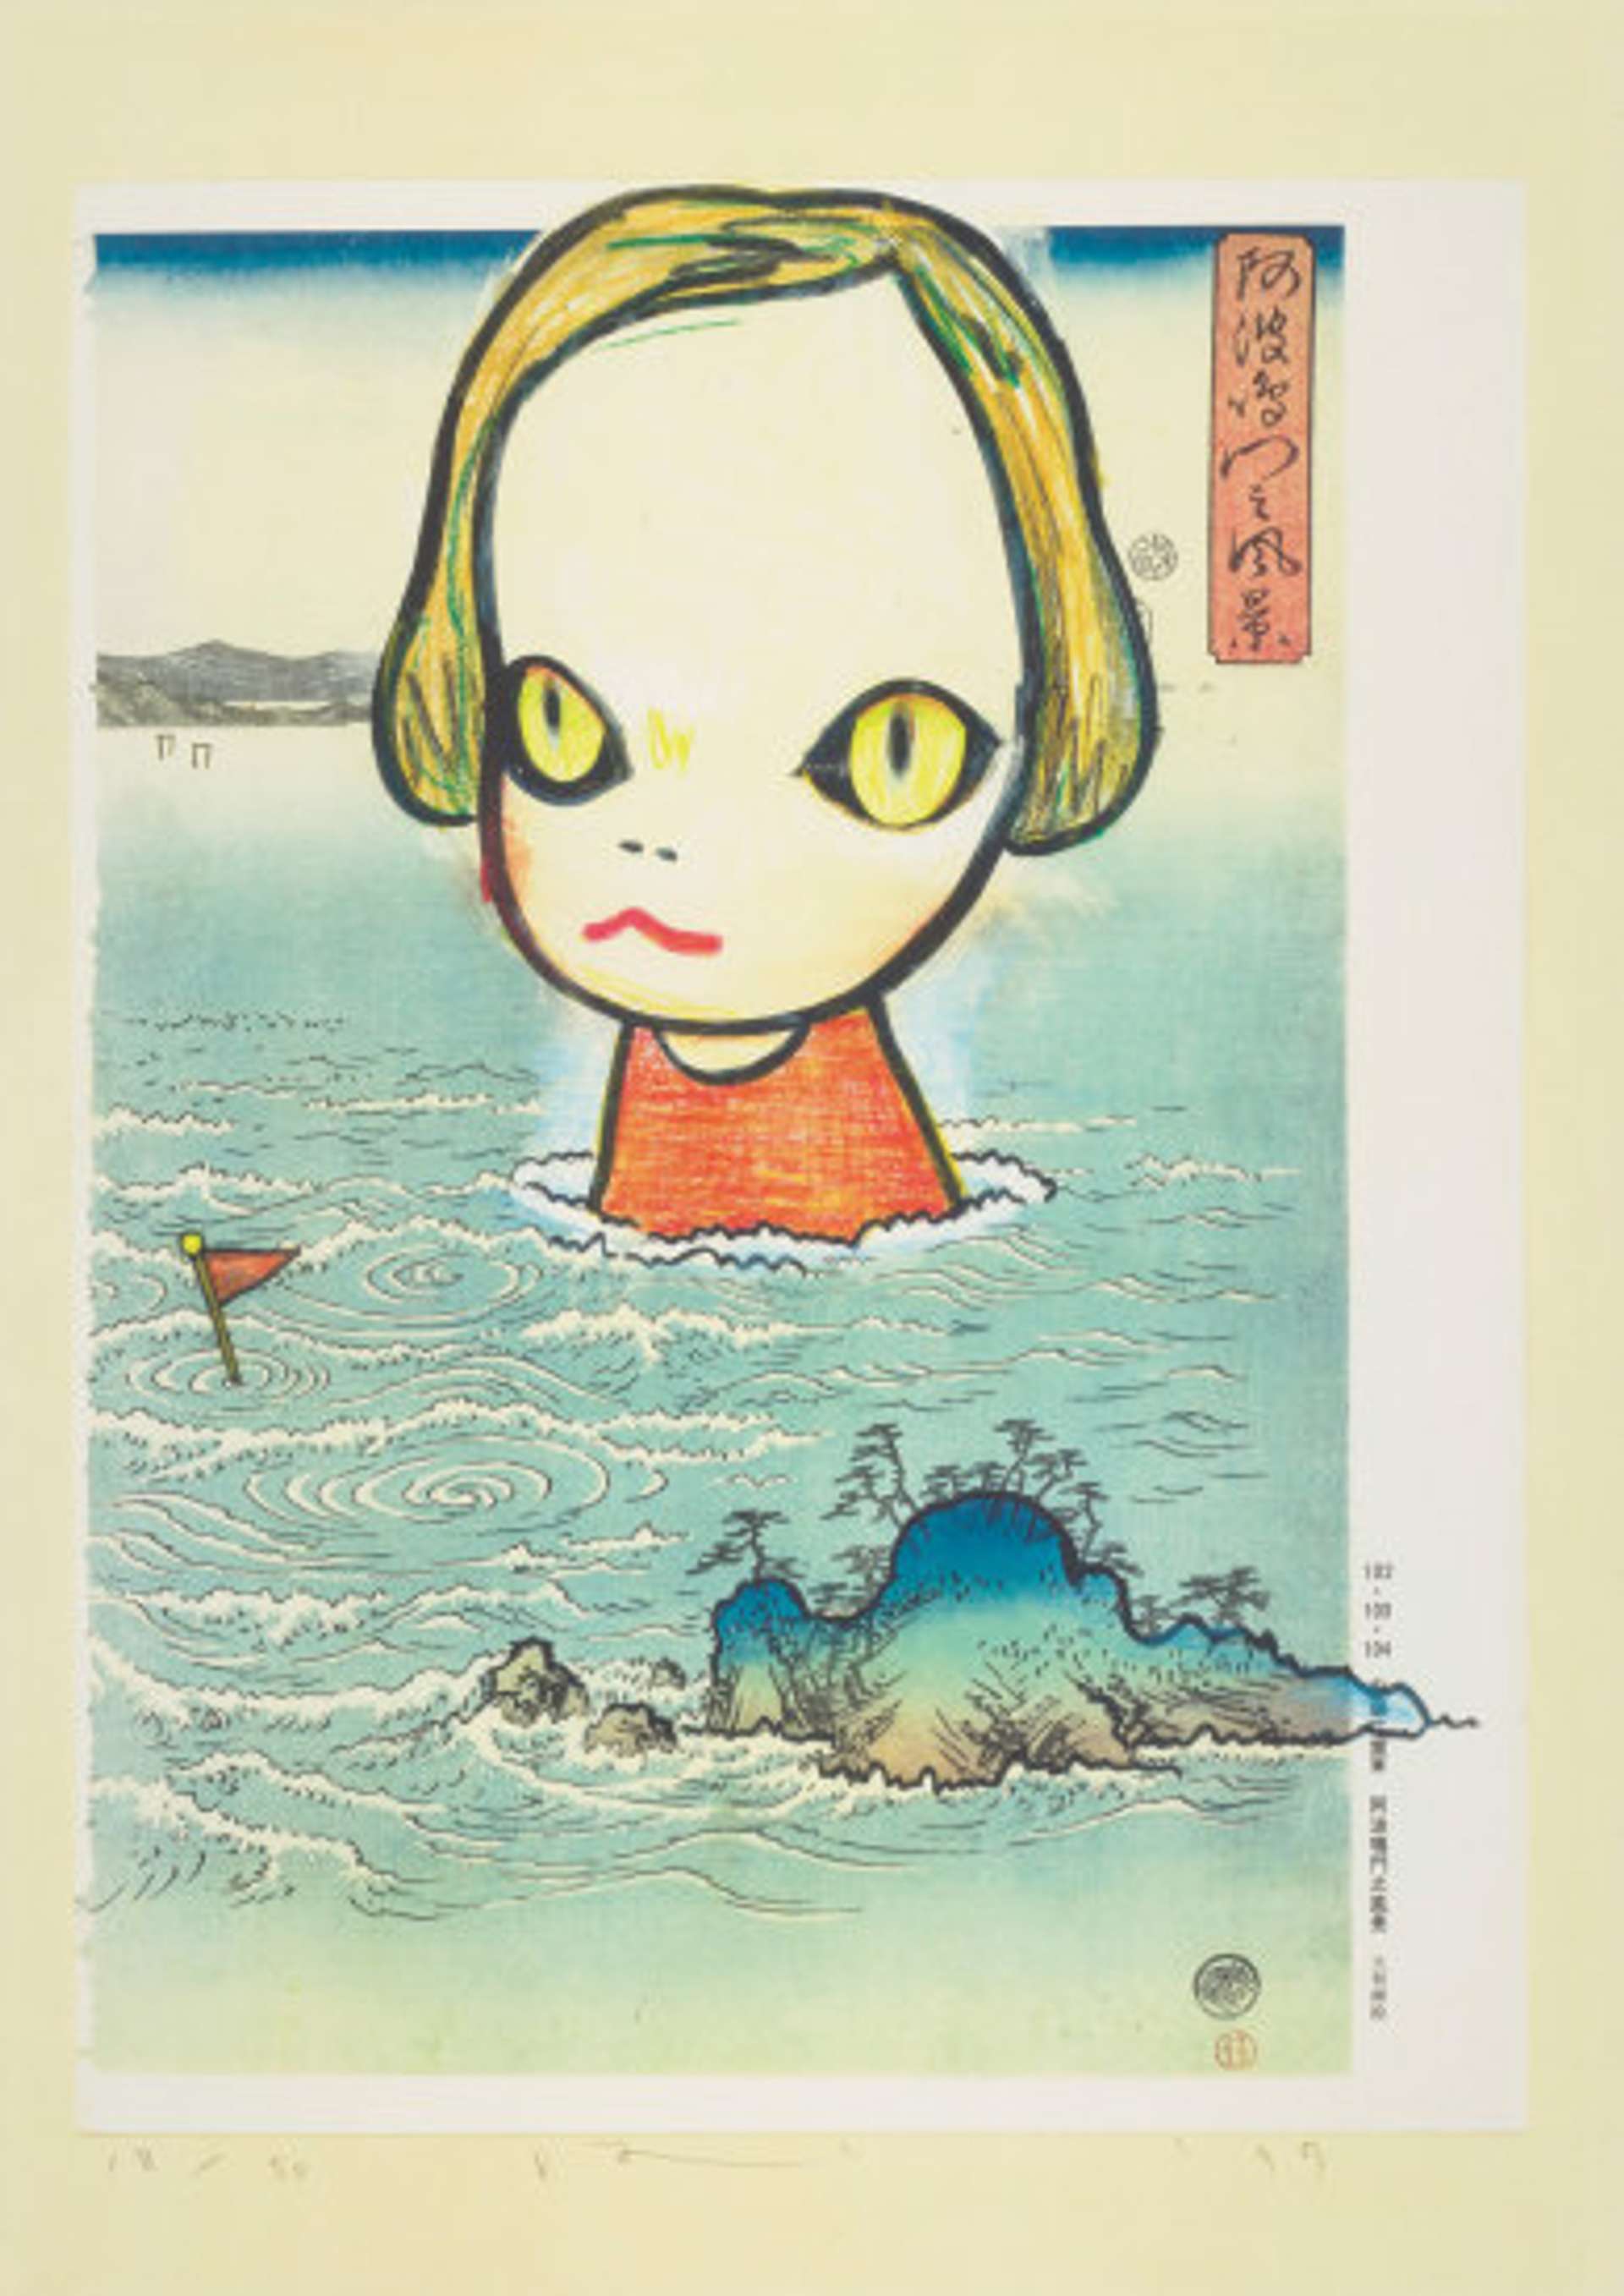 Yoshitomo Nara’s Ocean Child  (1999). A cartoon girl sits amid woodblock-inspired waves.